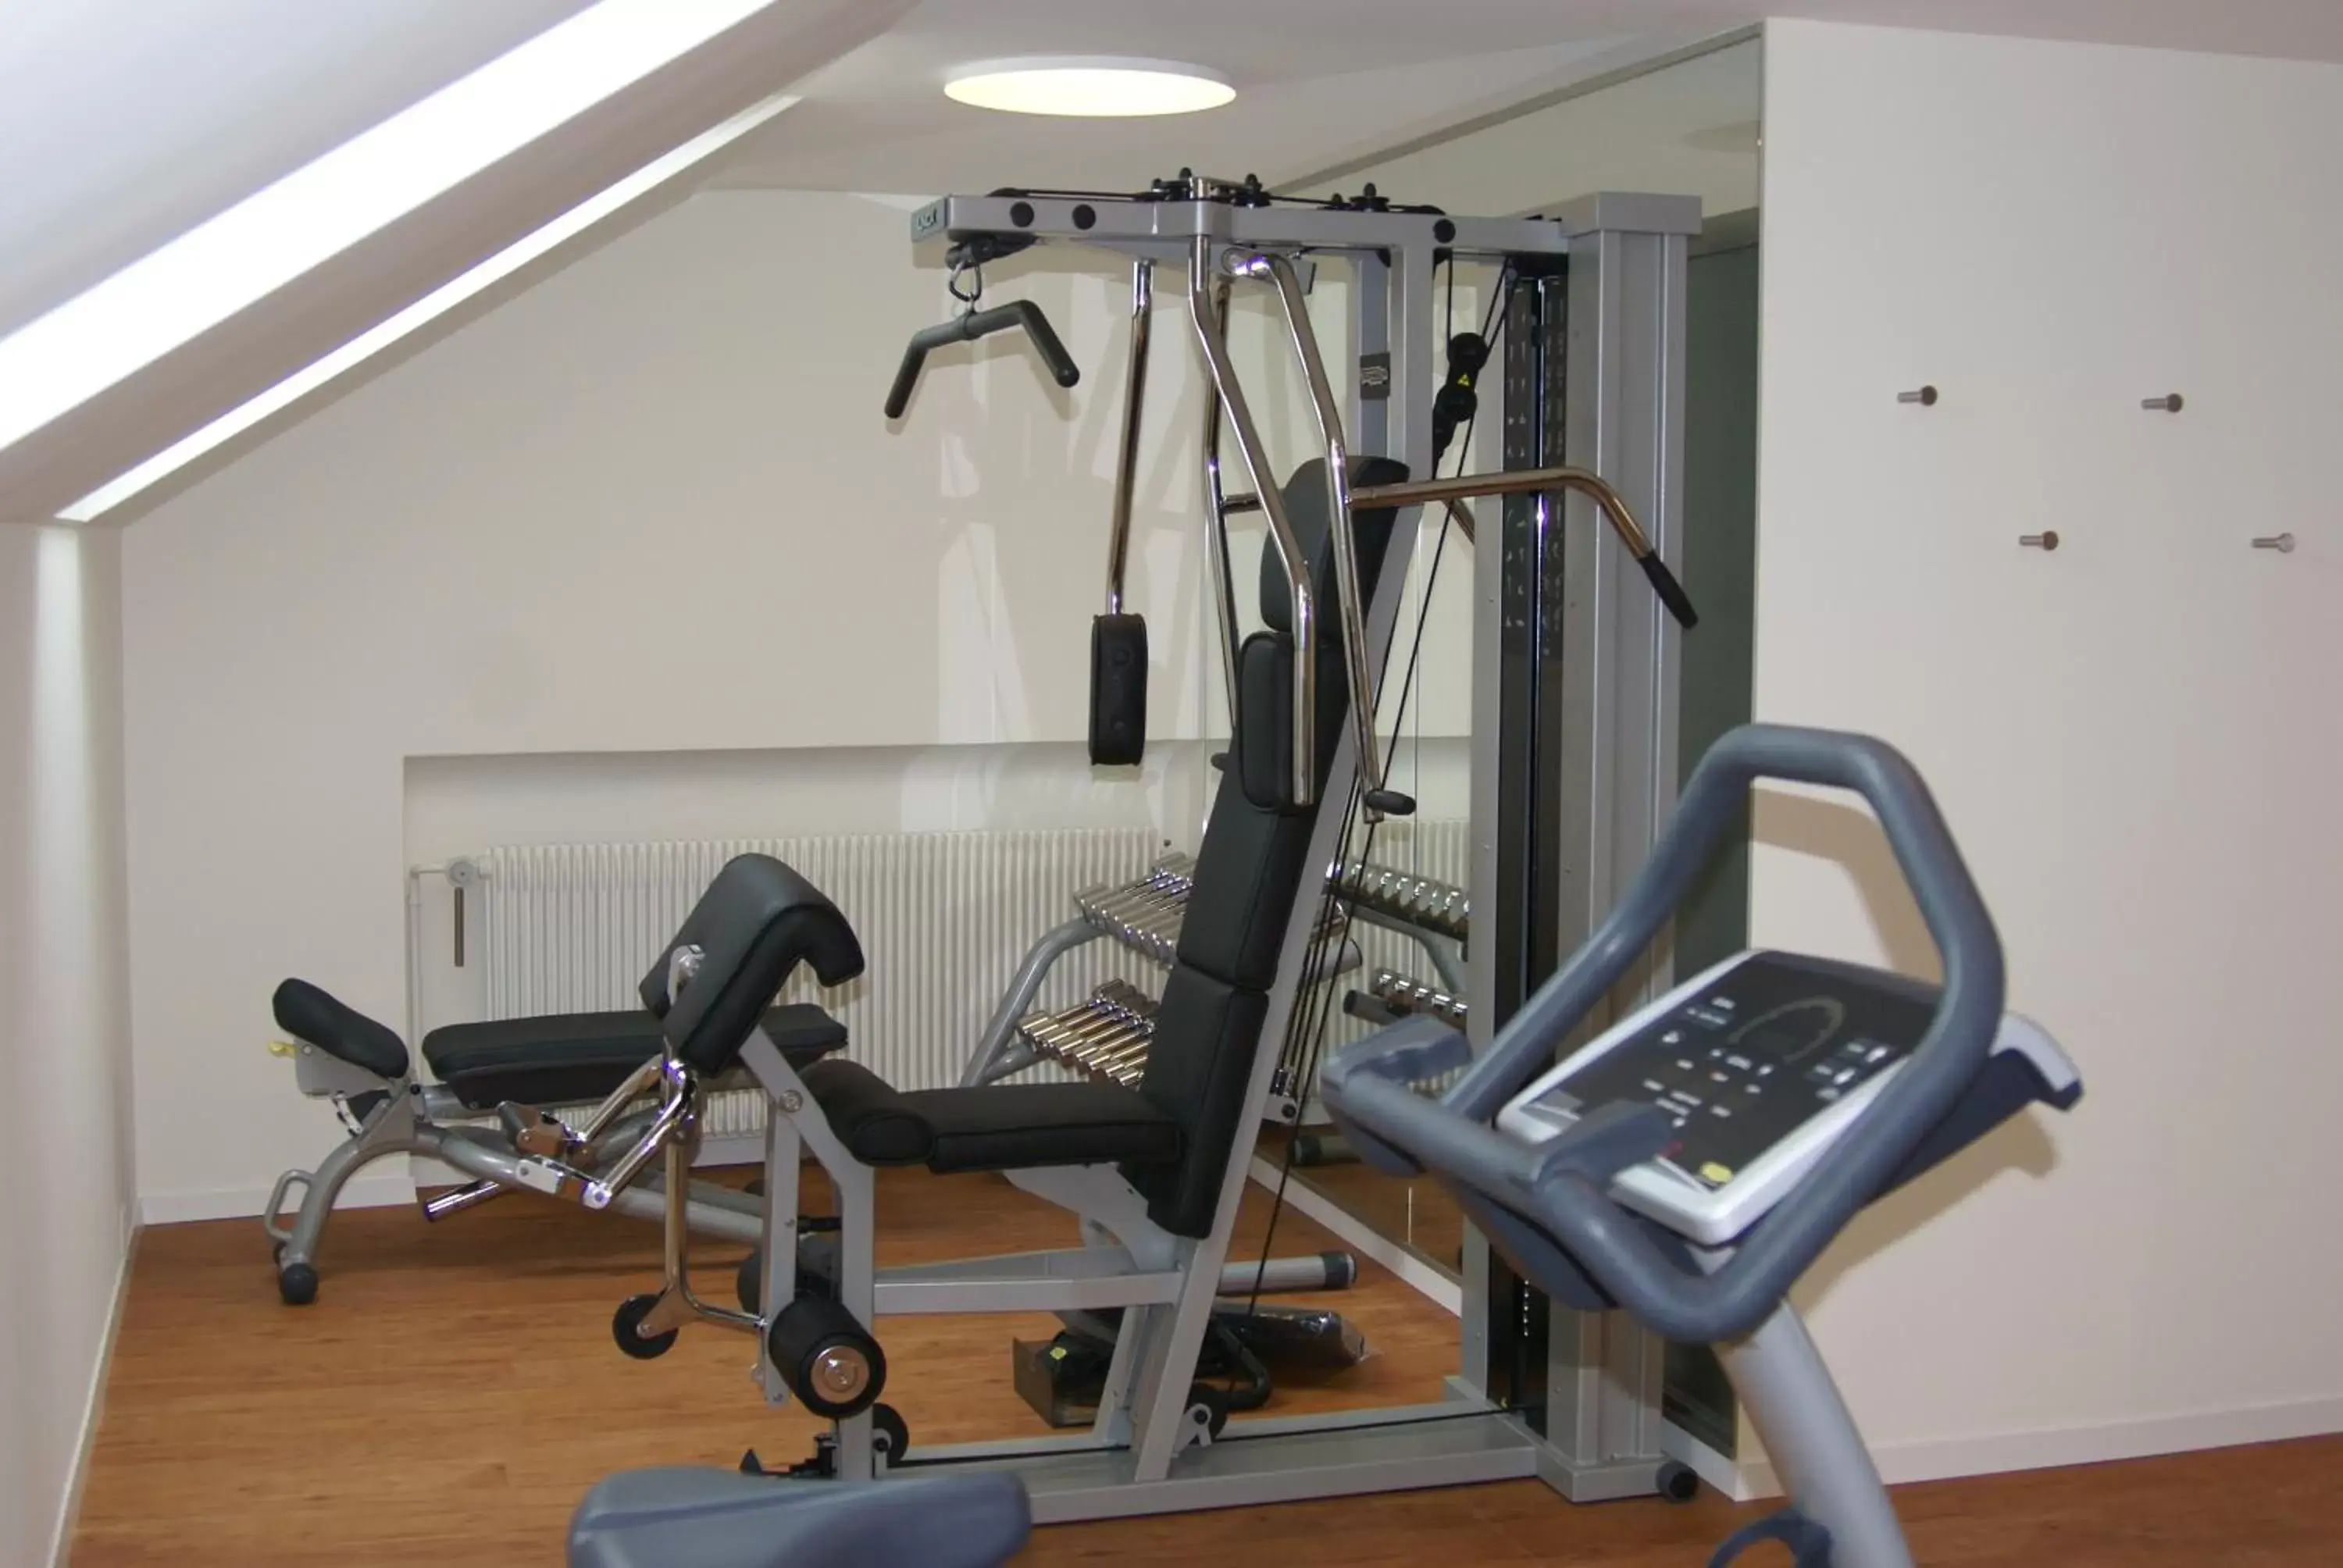 Fitness centre/facilities, Fitness Center/Facilities in Hotel Bären am Bundesplatz